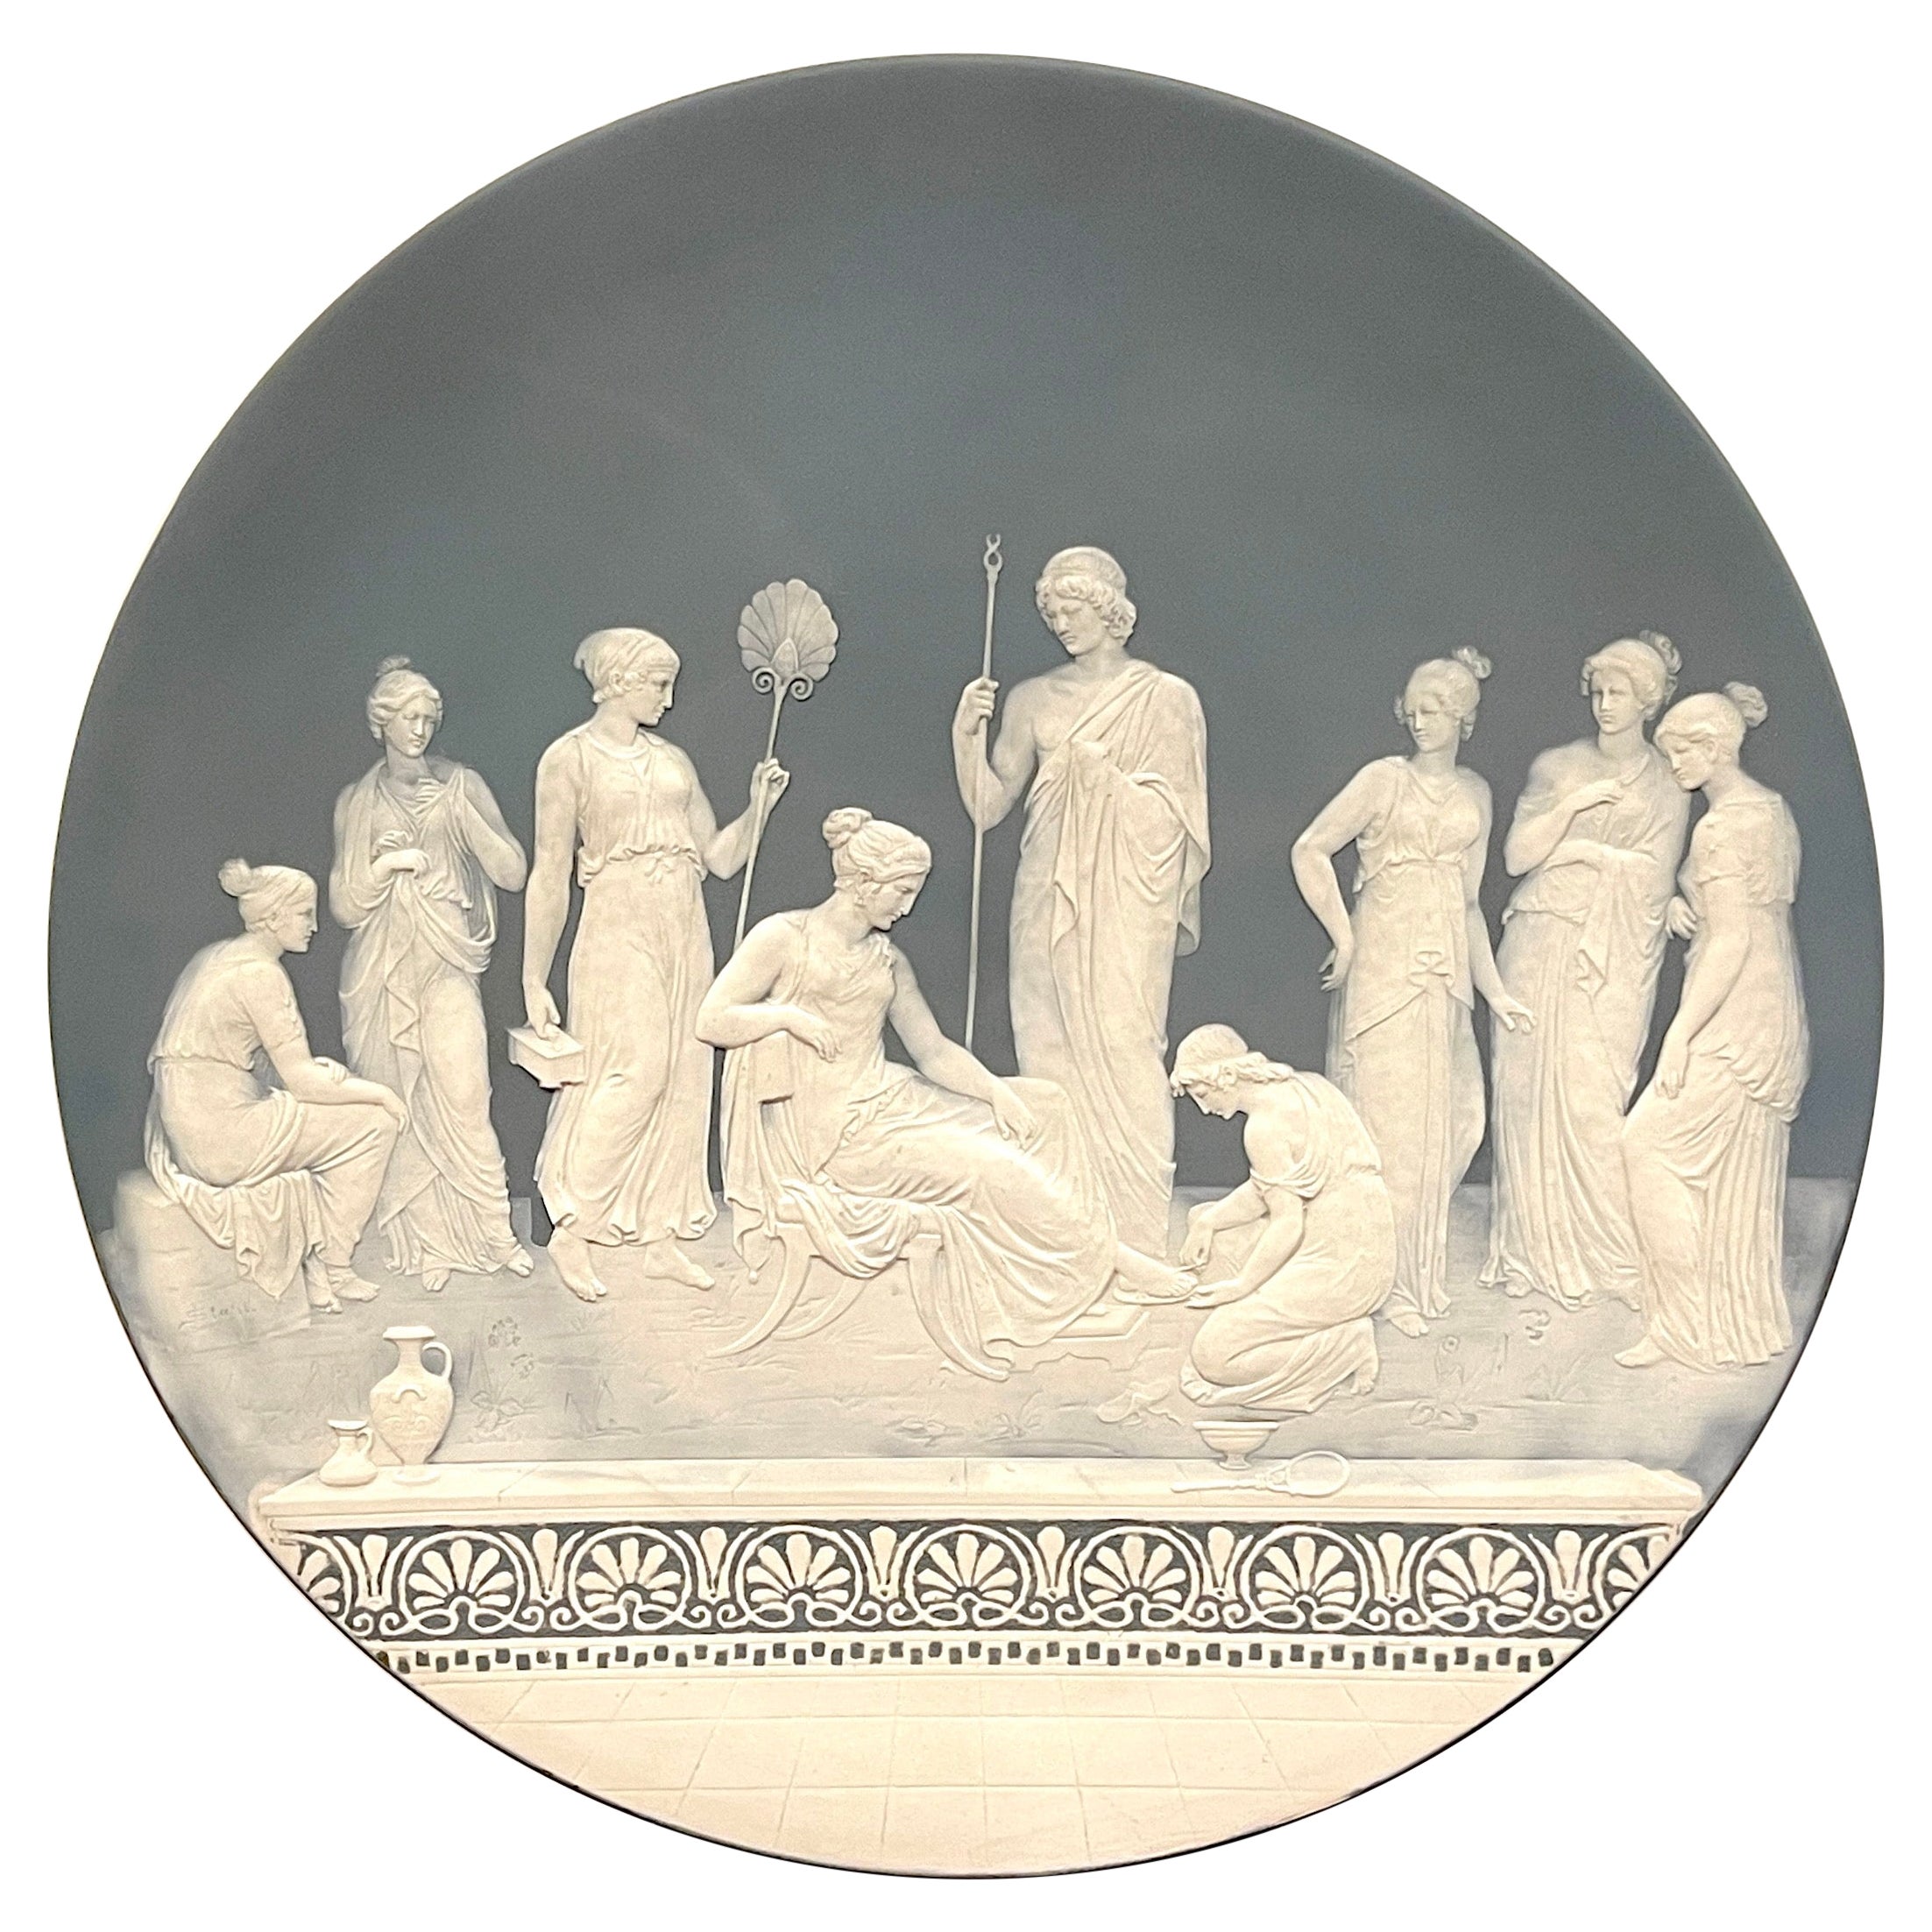 Neoklassischer Platzteller aus Stahl von Johann Baptist Pate-sur-pate / Phanolith mit Hofszenen